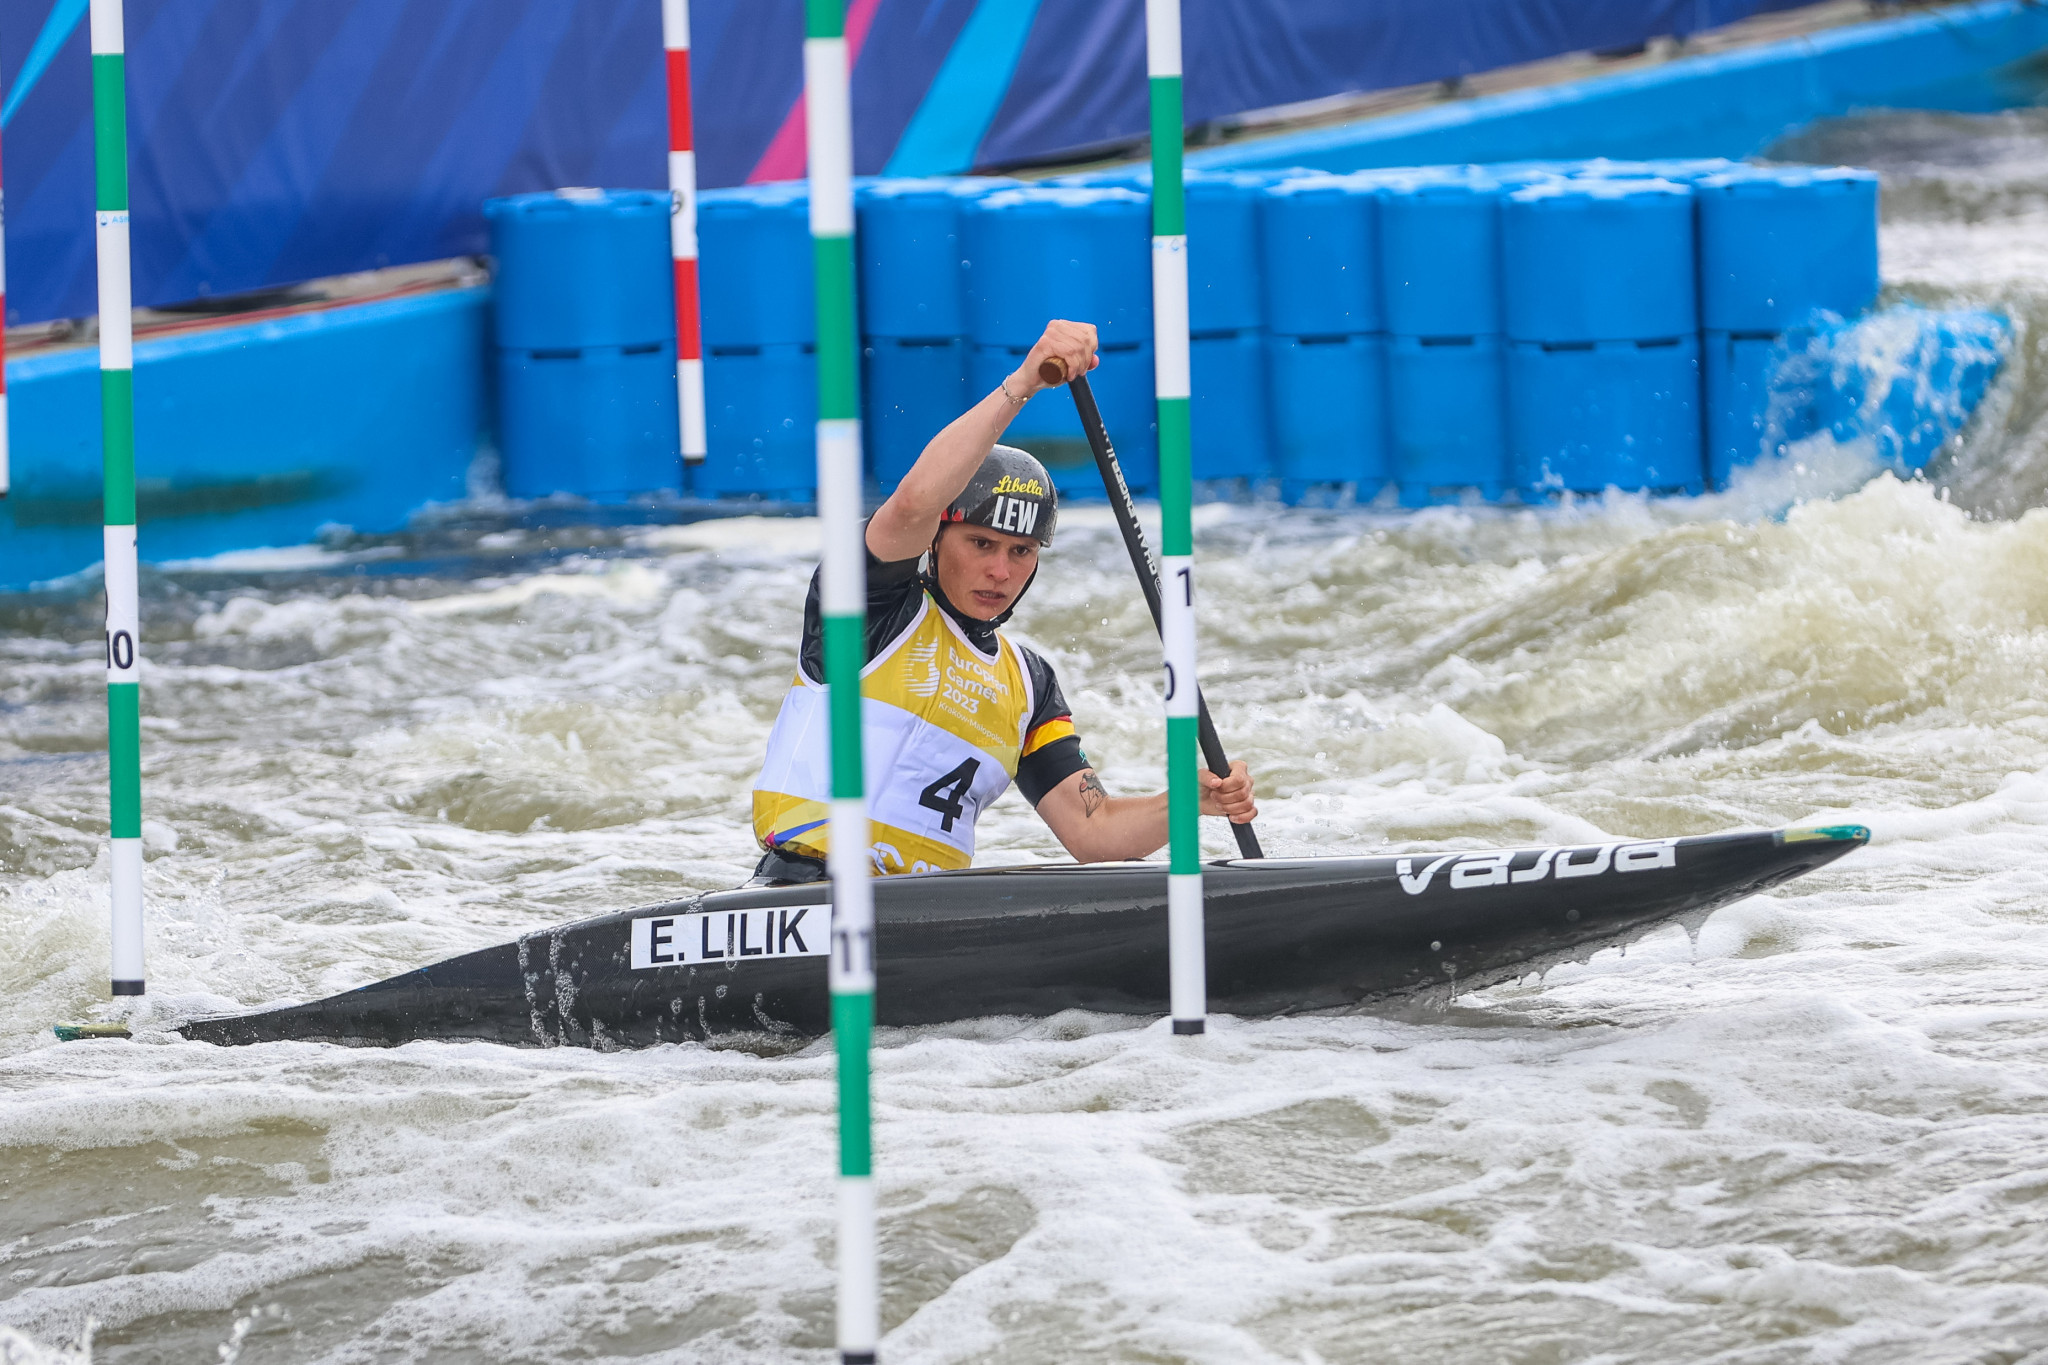 Tears of joy for Lilik as she turns her fortunes in European Games women’s canoe final